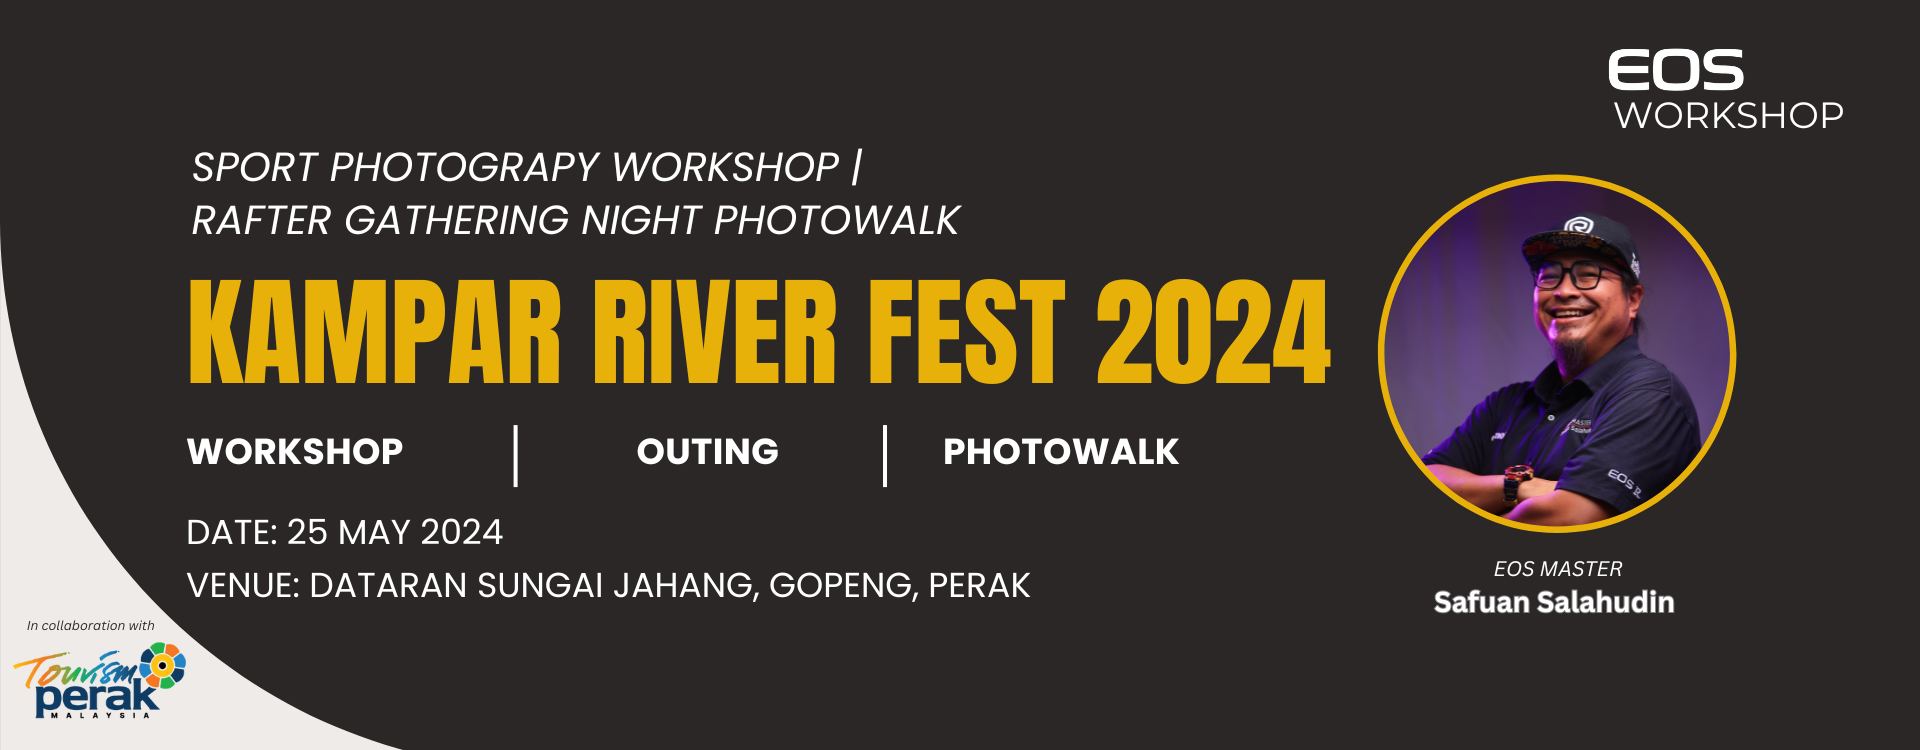 Kampar River Fest 2024 - 1920 X 750.png